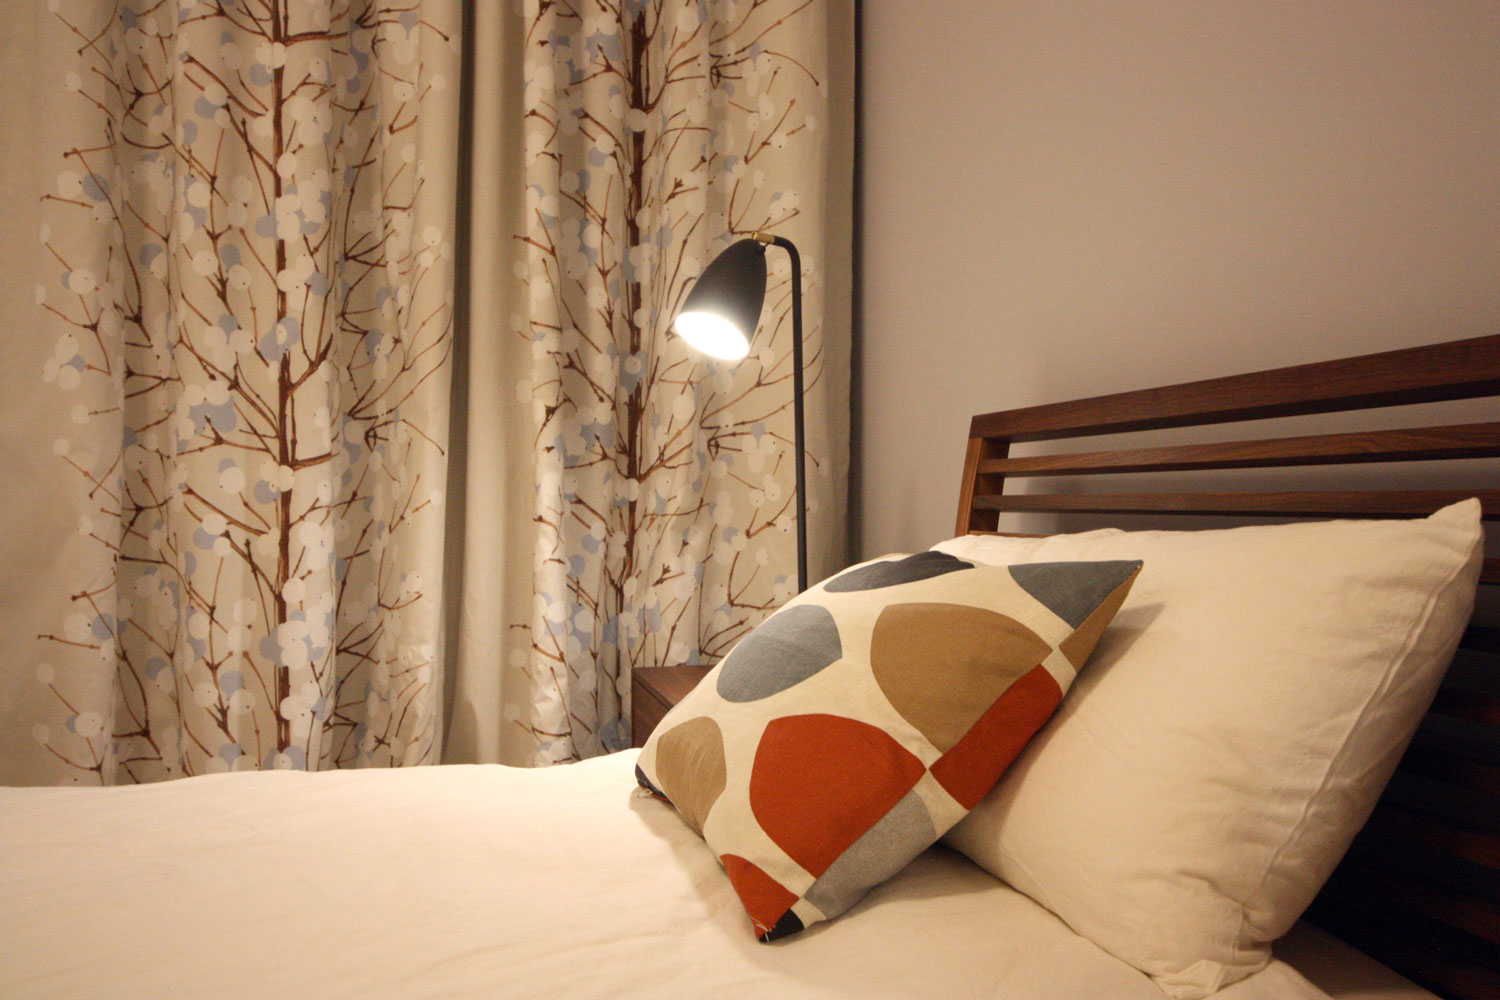 Eine schwarze Nachttischlampe beleuchtet stimmungsvoll ein farbiges Kissen auf einem Bett. Im Hintergrund ein Vorhang mit einem Baummotiv.